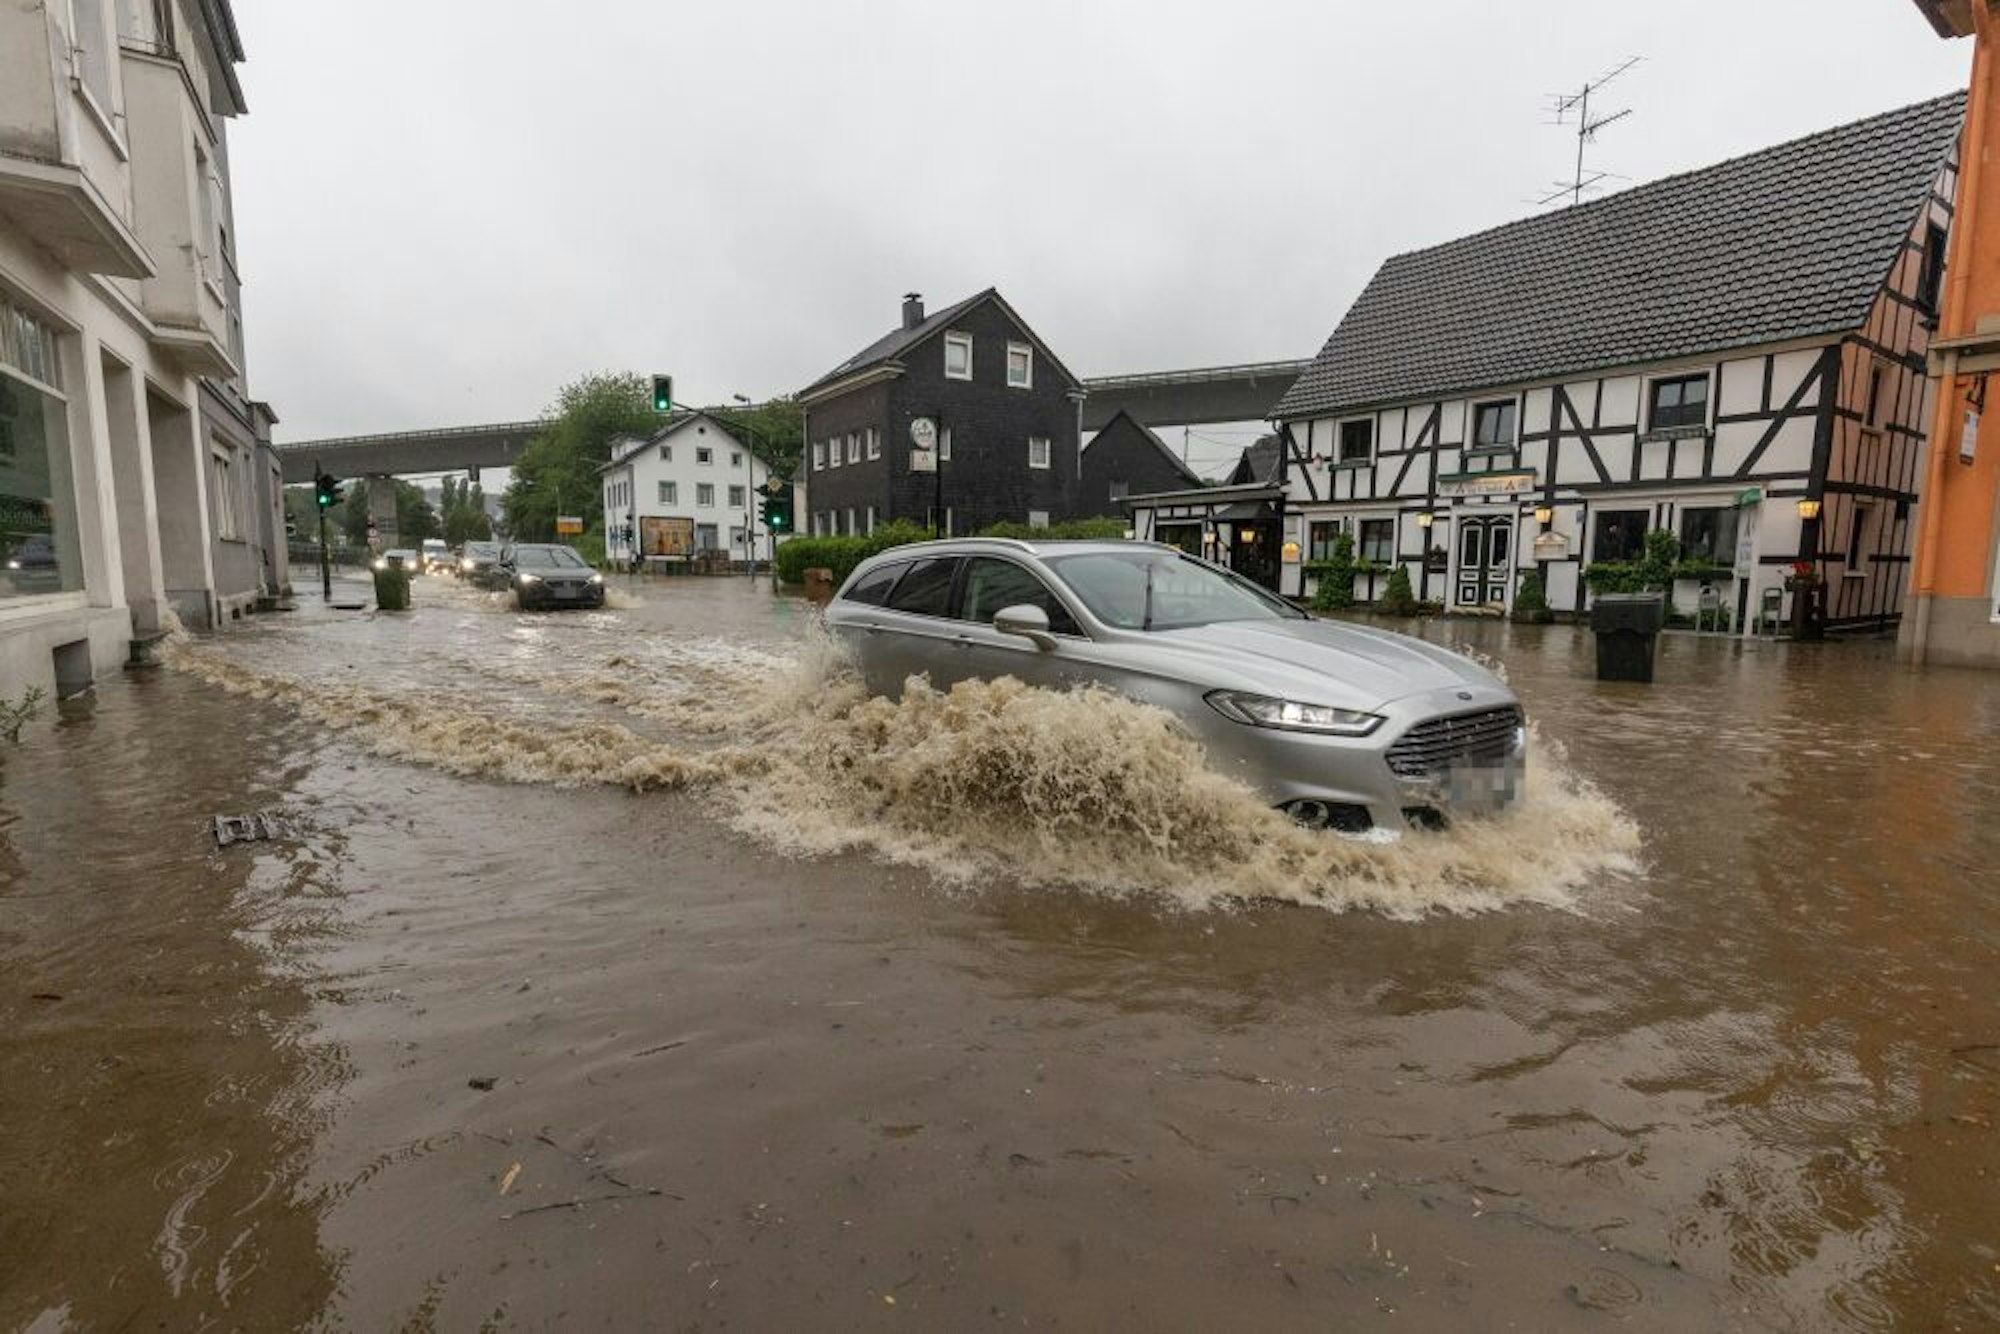 Bilder wie dieses von der Flutkatastrophe in diesem Jahr könnte es in Zukunft öfter geben.